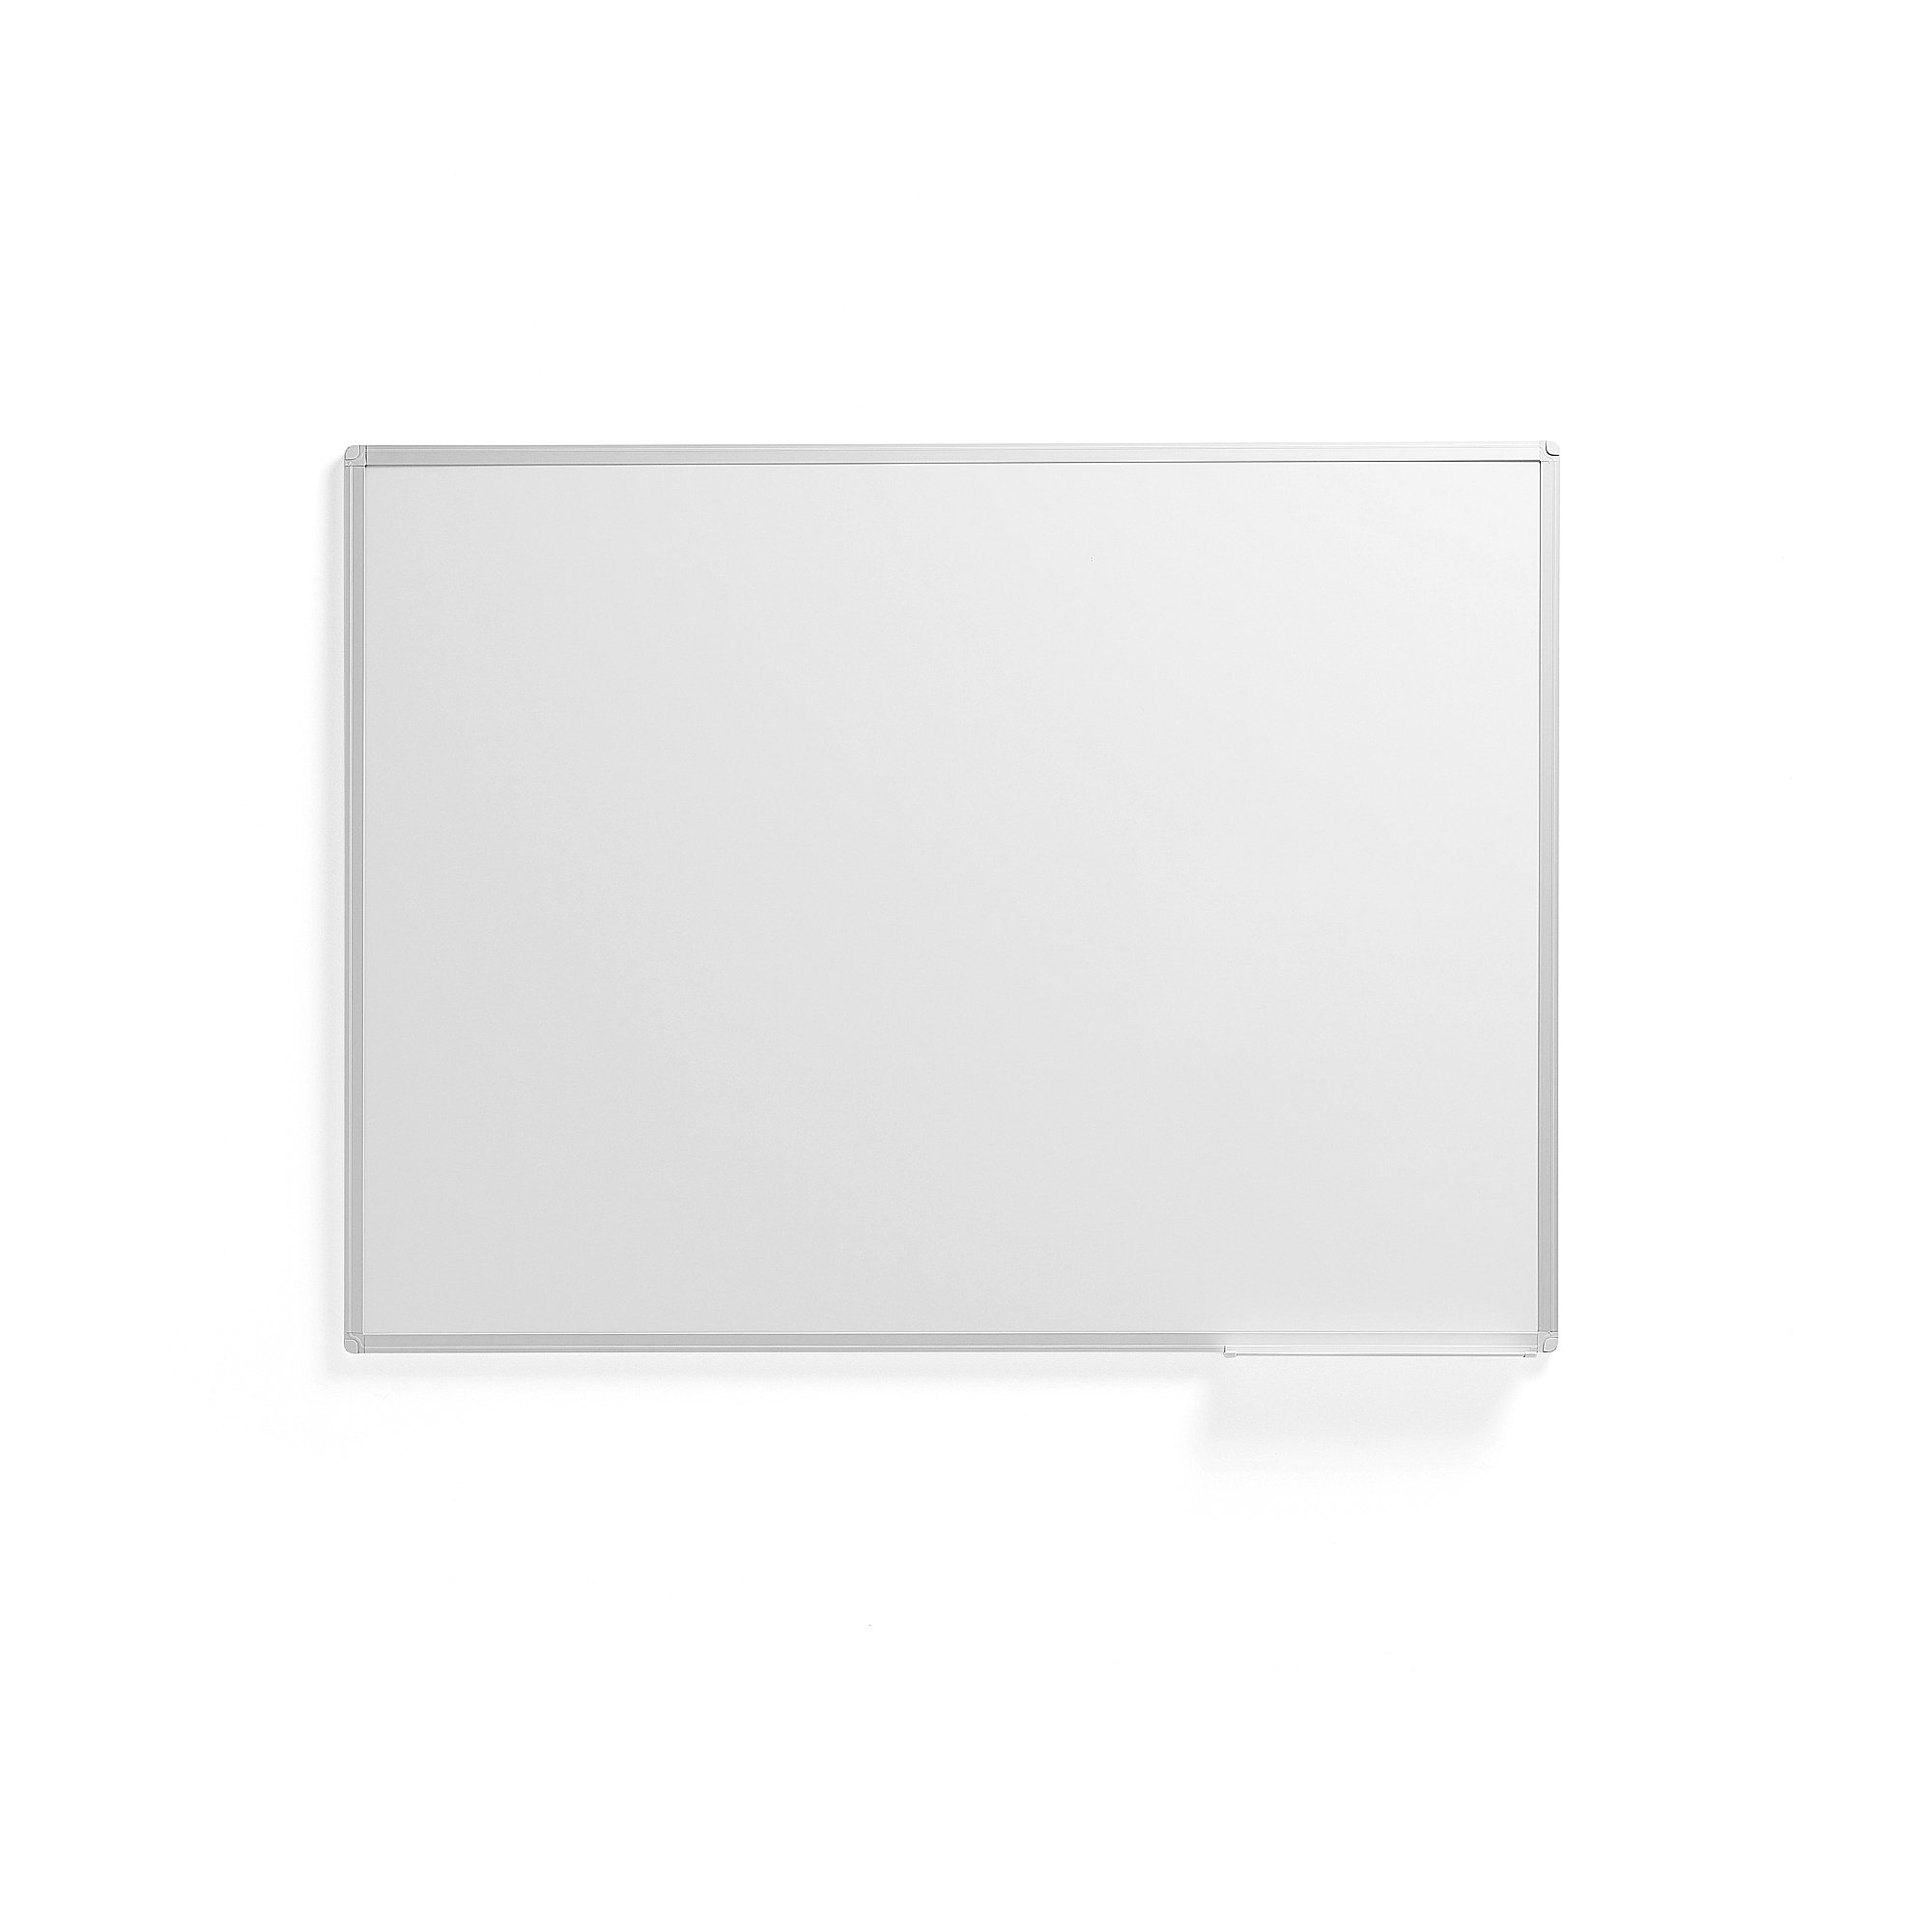 E-shop Biela tabuľa JULIE, 1200x900 mm